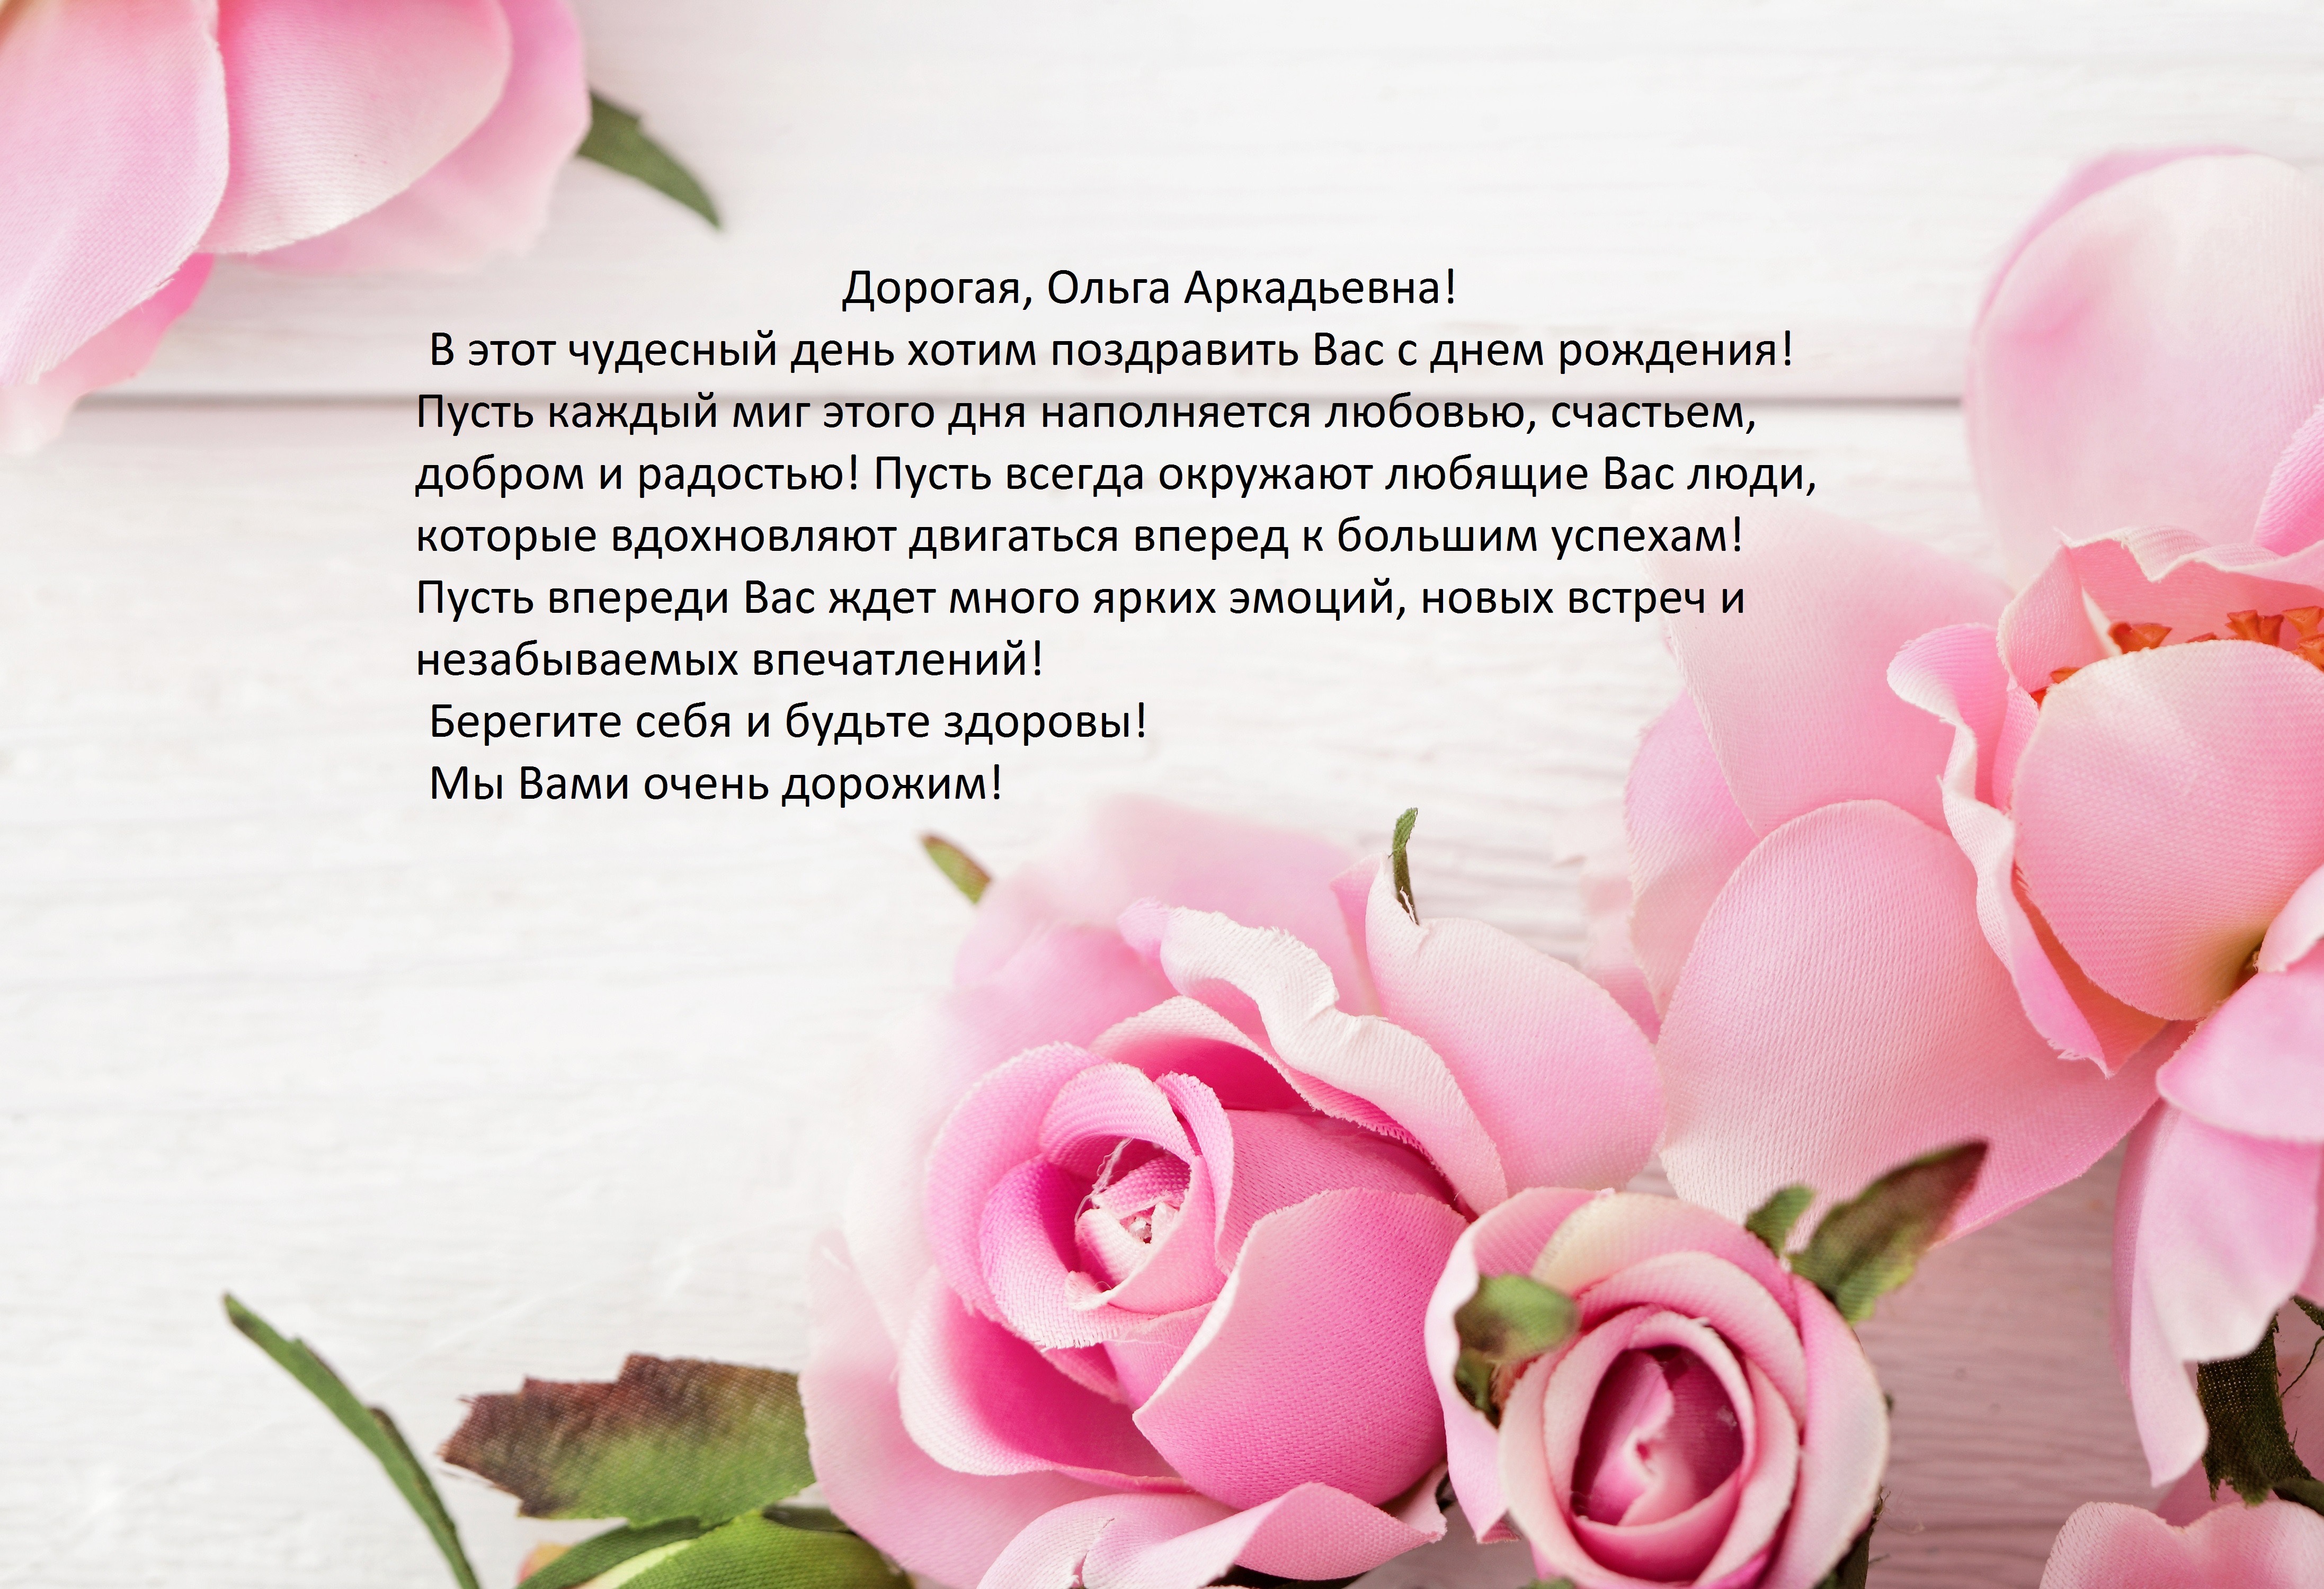 Сегодня, 22 марта, день рождения Ольги Аркадьевны Сулеймановой, члена совета нашей школы!